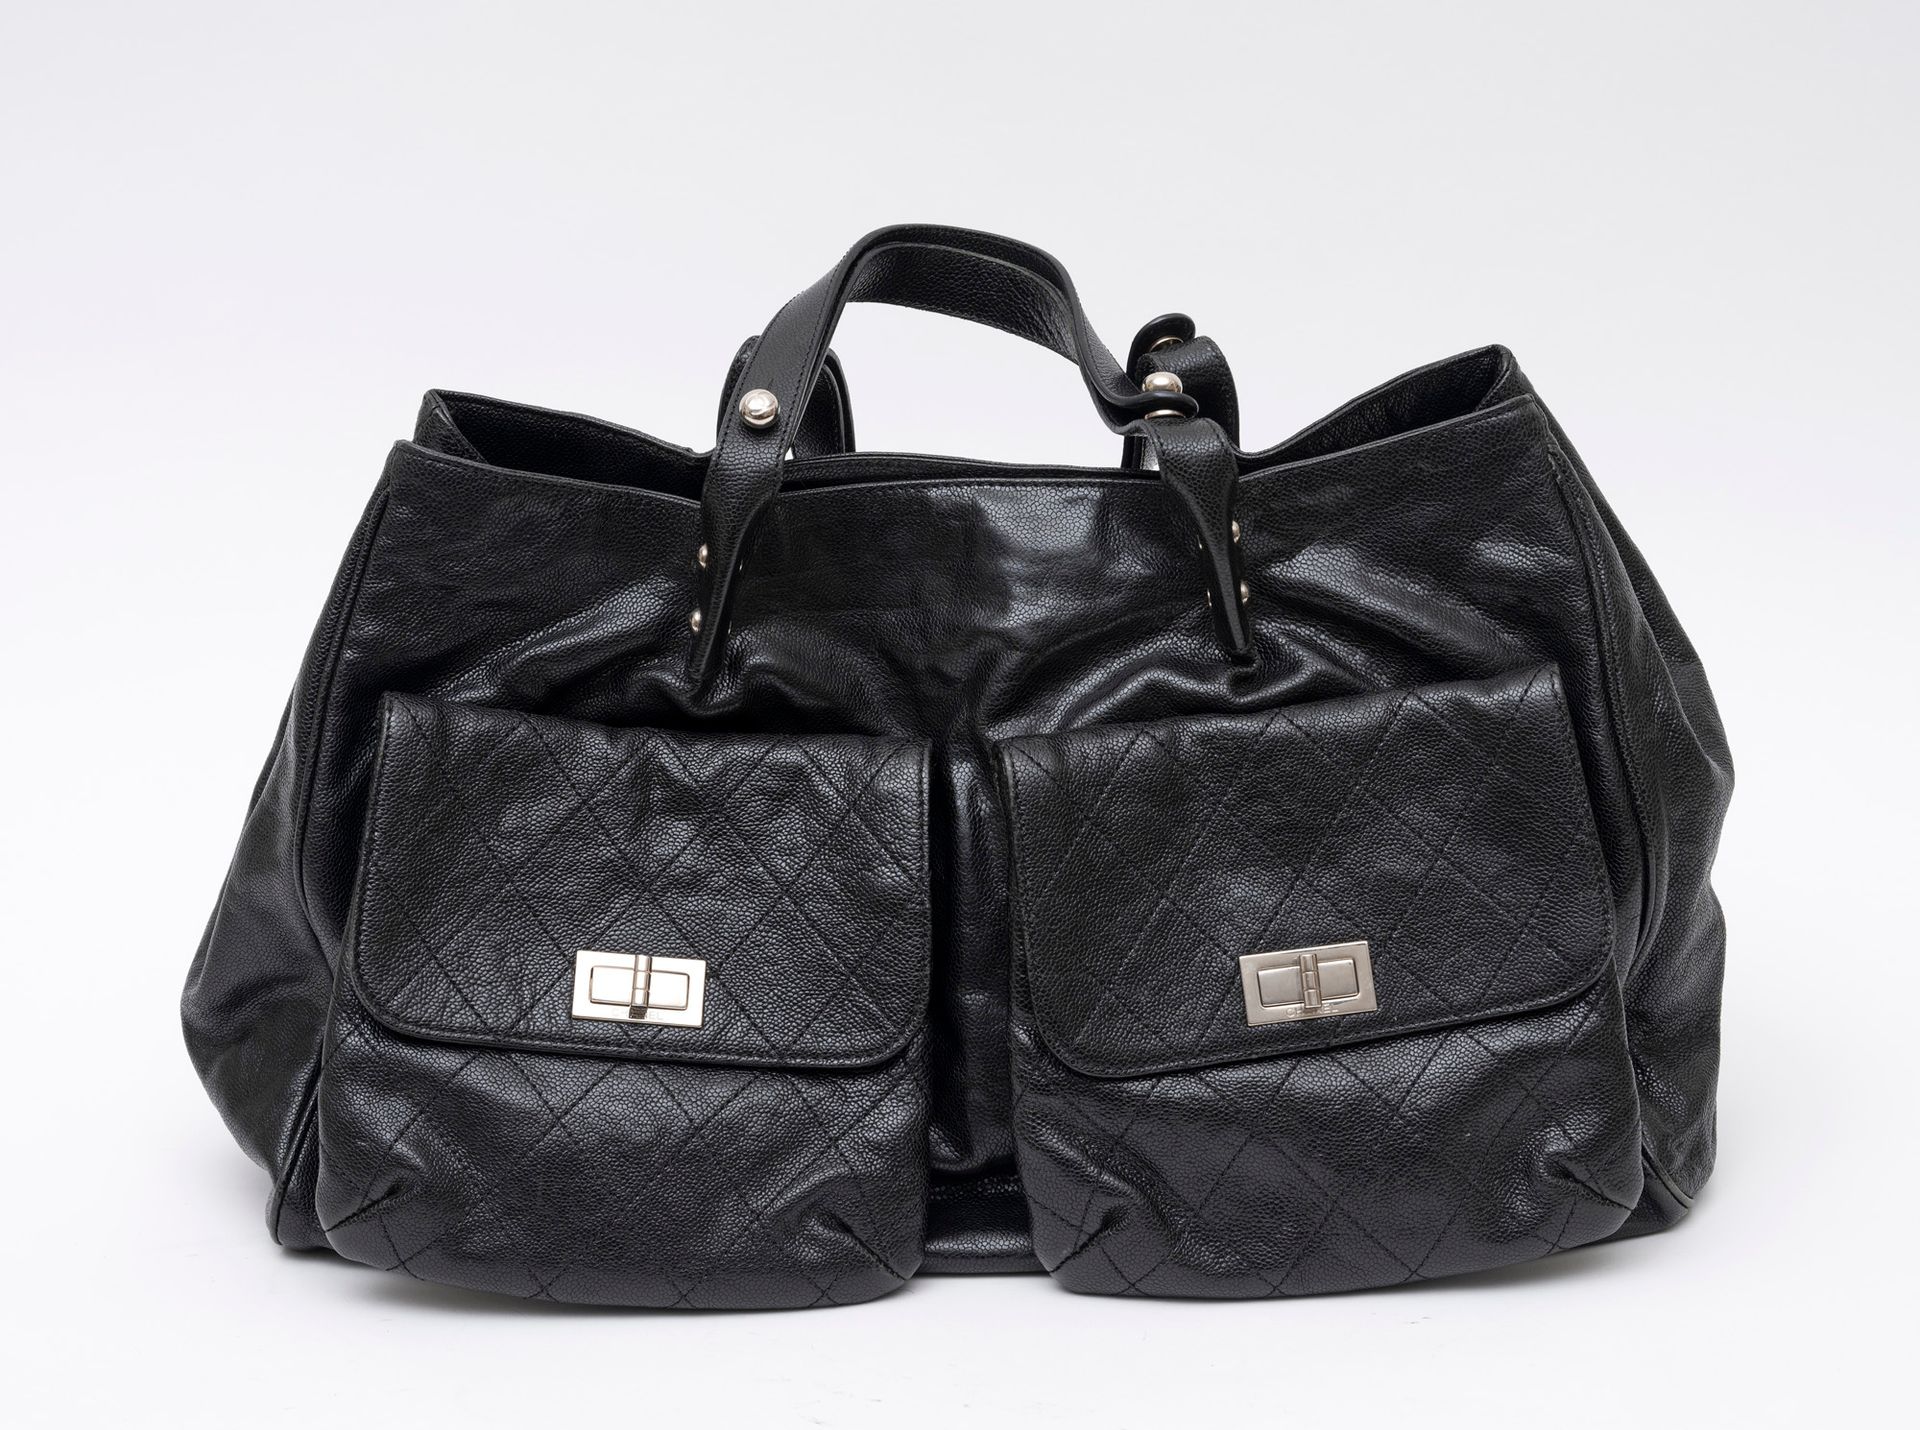 Chanel 香奈儿巴黎大型购物袋，黑色粒面小牛皮 - 内部为灰色织物 - 镀钯金属首饰 - 约2008年 - 一侧有两个口袋 - 磁扣开合 - 真品标签 - &hellip;